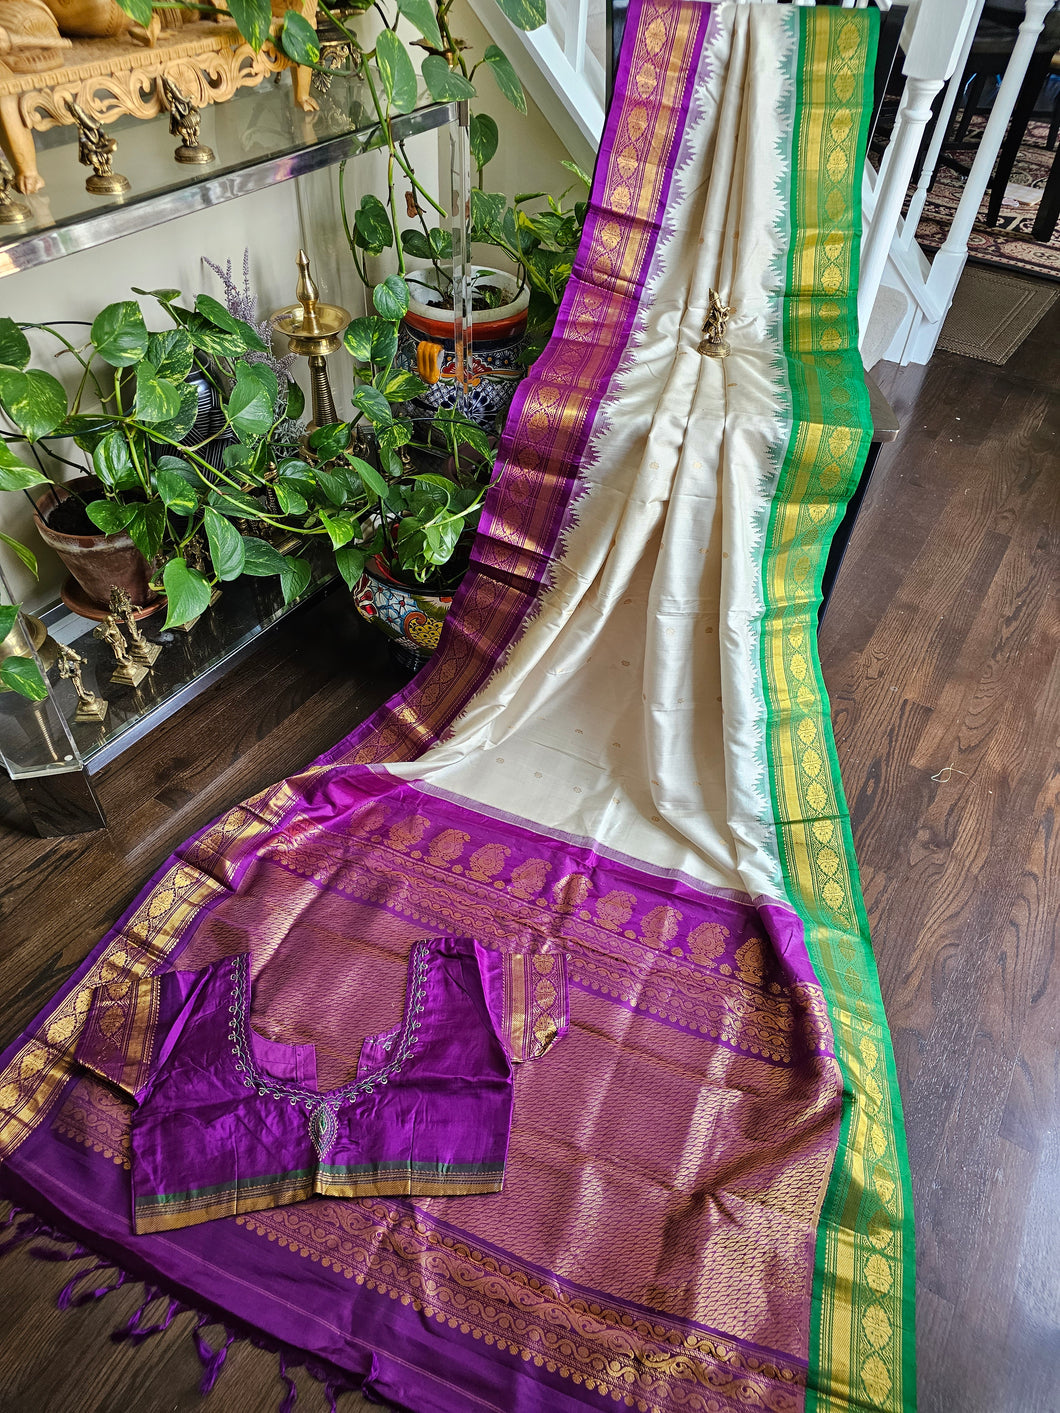 Stitched Blouse - Pure Gadwal Silk. - Ganga Jamuna border - Purple and Green